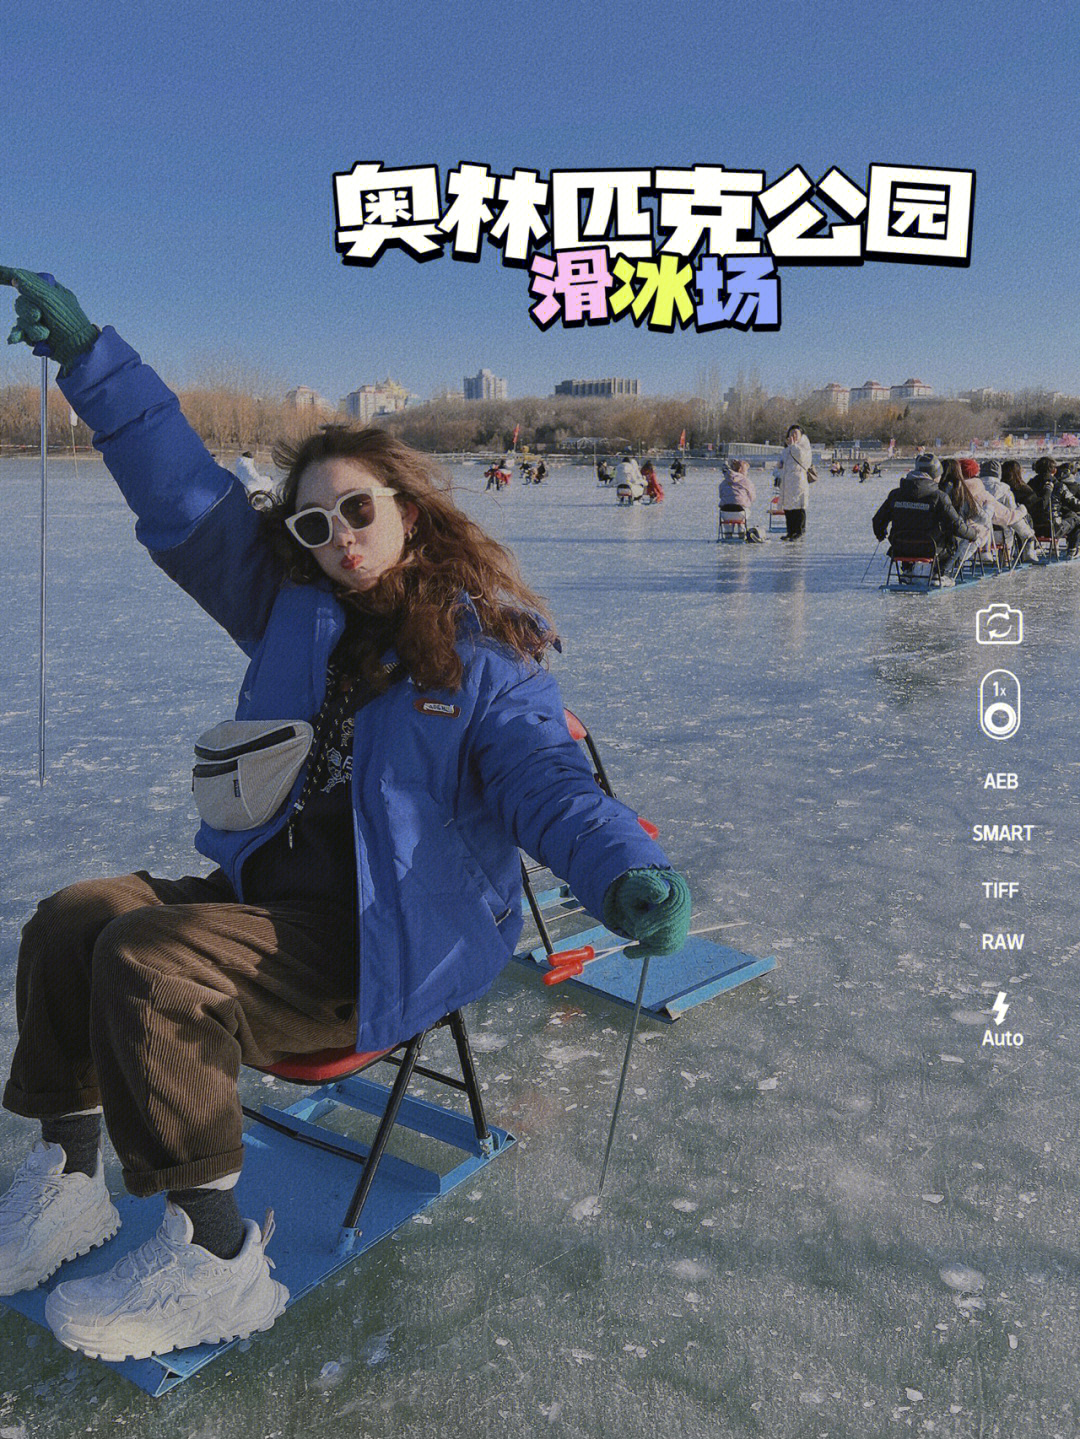 北京奥森滑冰车可太有意思啦